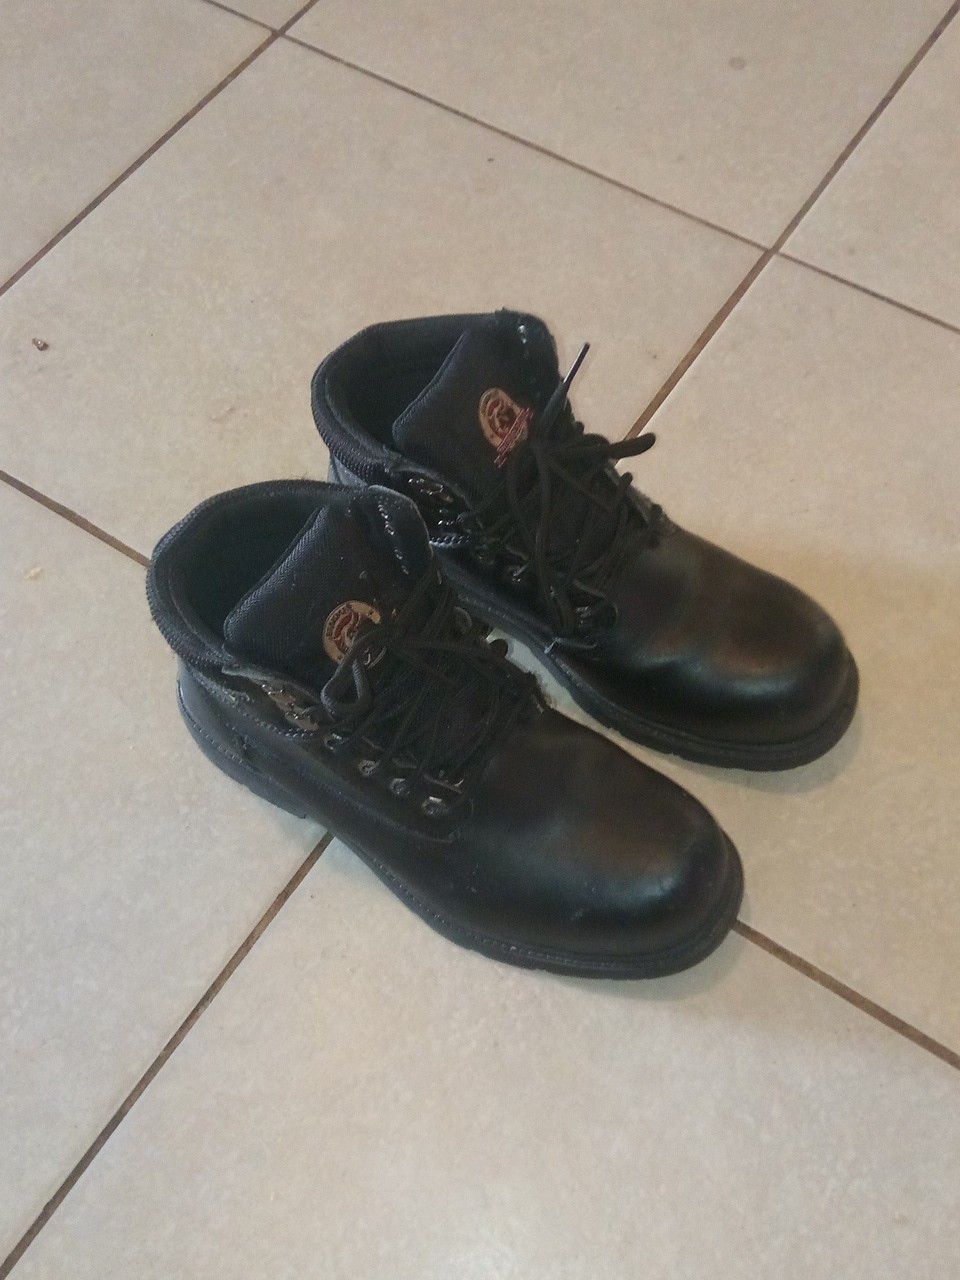 Steel toe work boots size 10 in men's